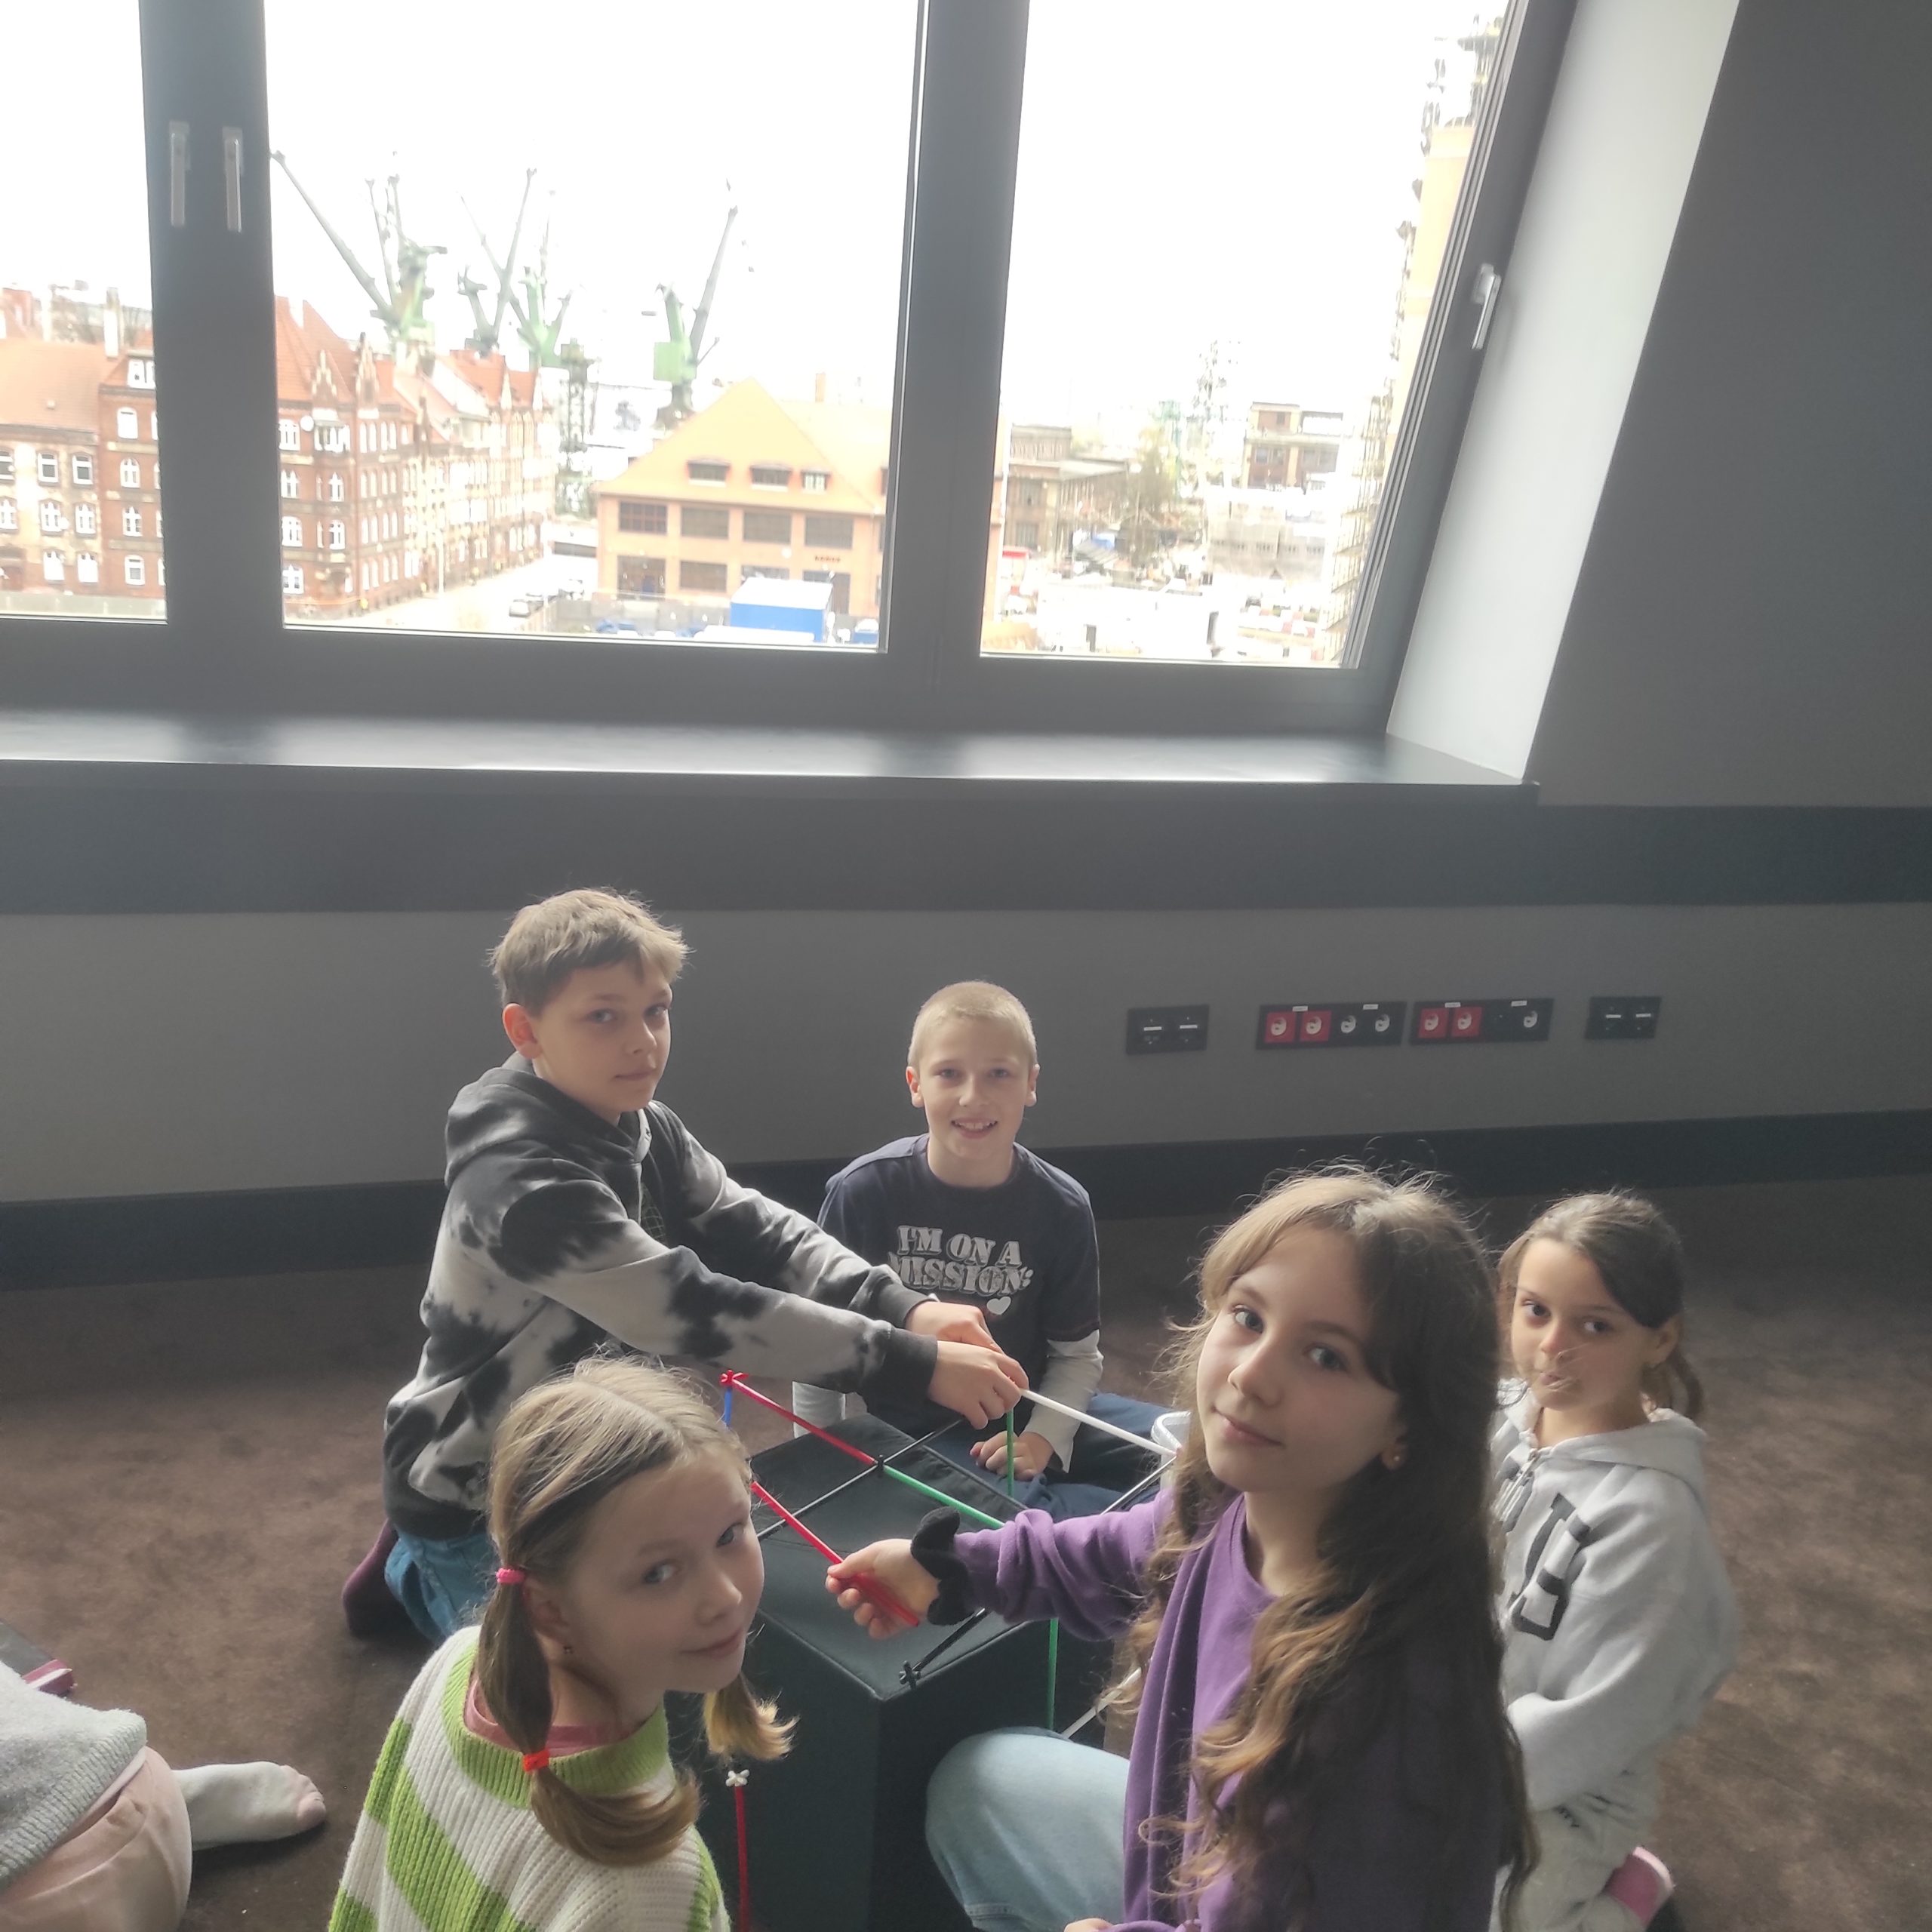 5 uczniów siedzi na podłodze wokół budowli z kolorowych rurek. W tle okno z widokiem na budynki i dźwigi.